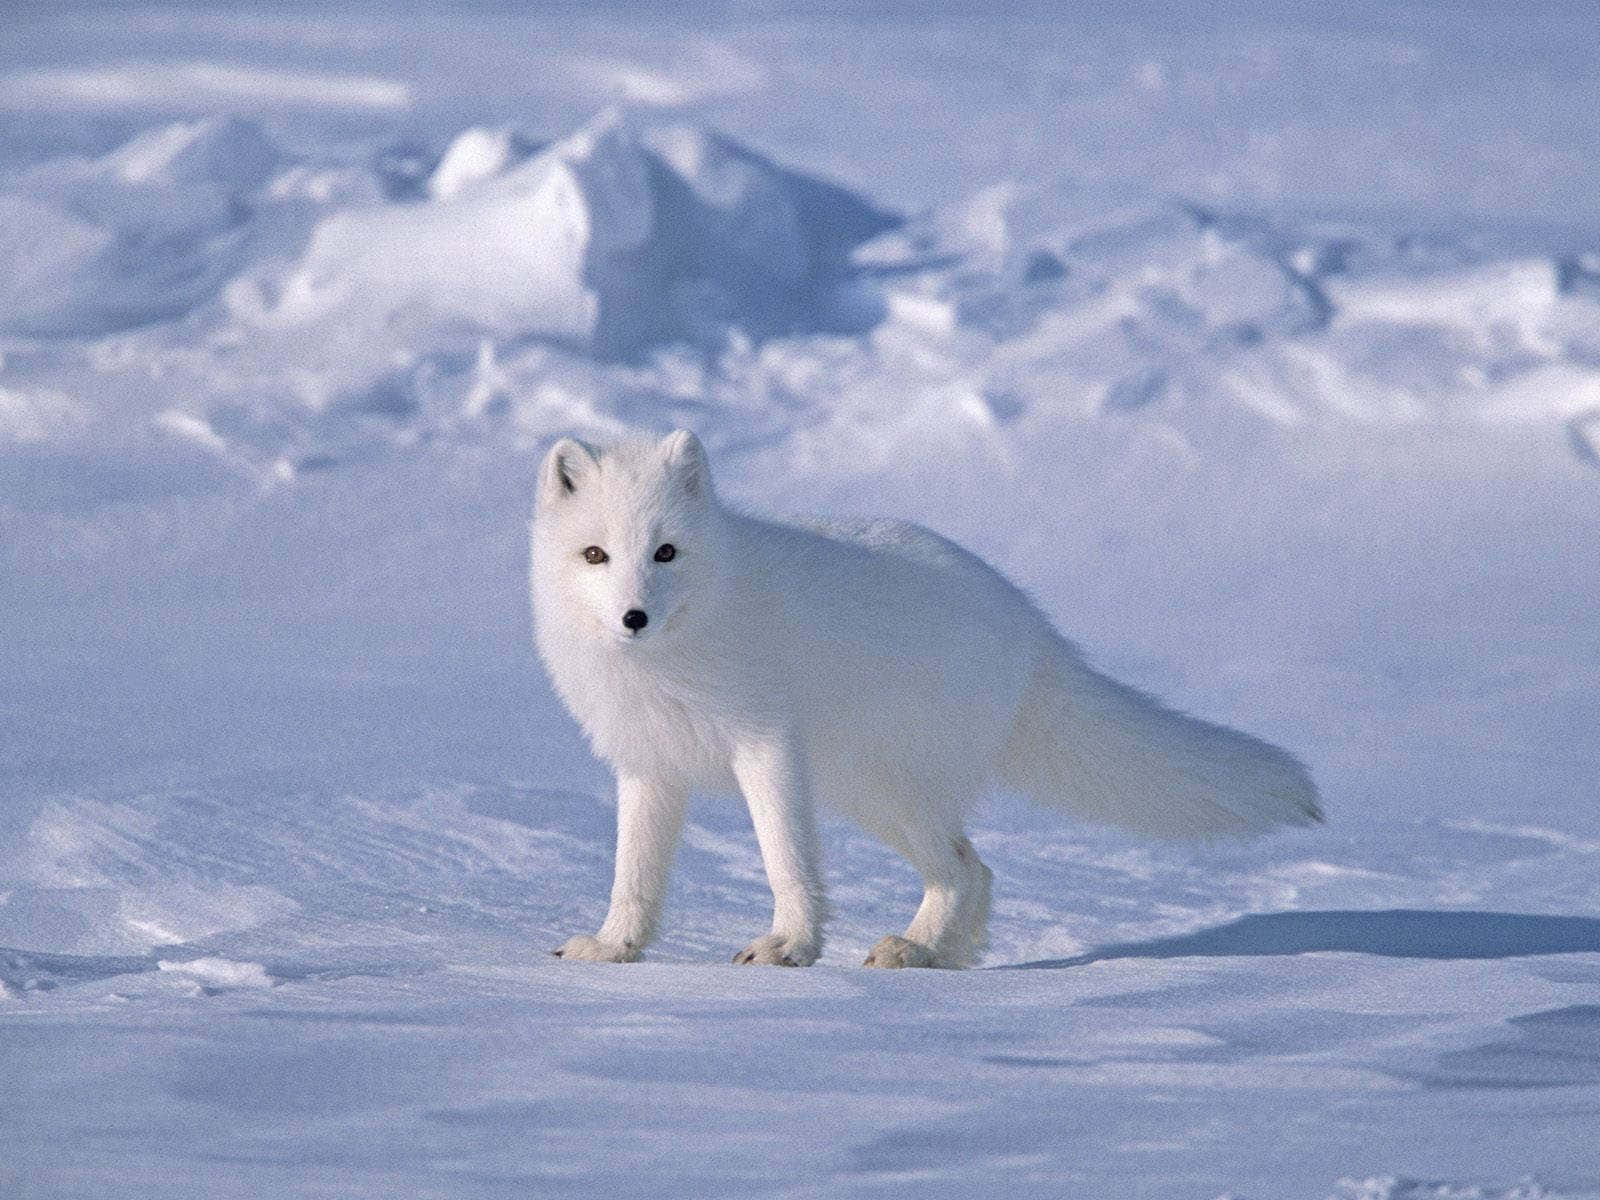 Einsüßer Polarfuchs Fügt Sich Harmonisch In Die Schneebedeckte Umgebung Ein.